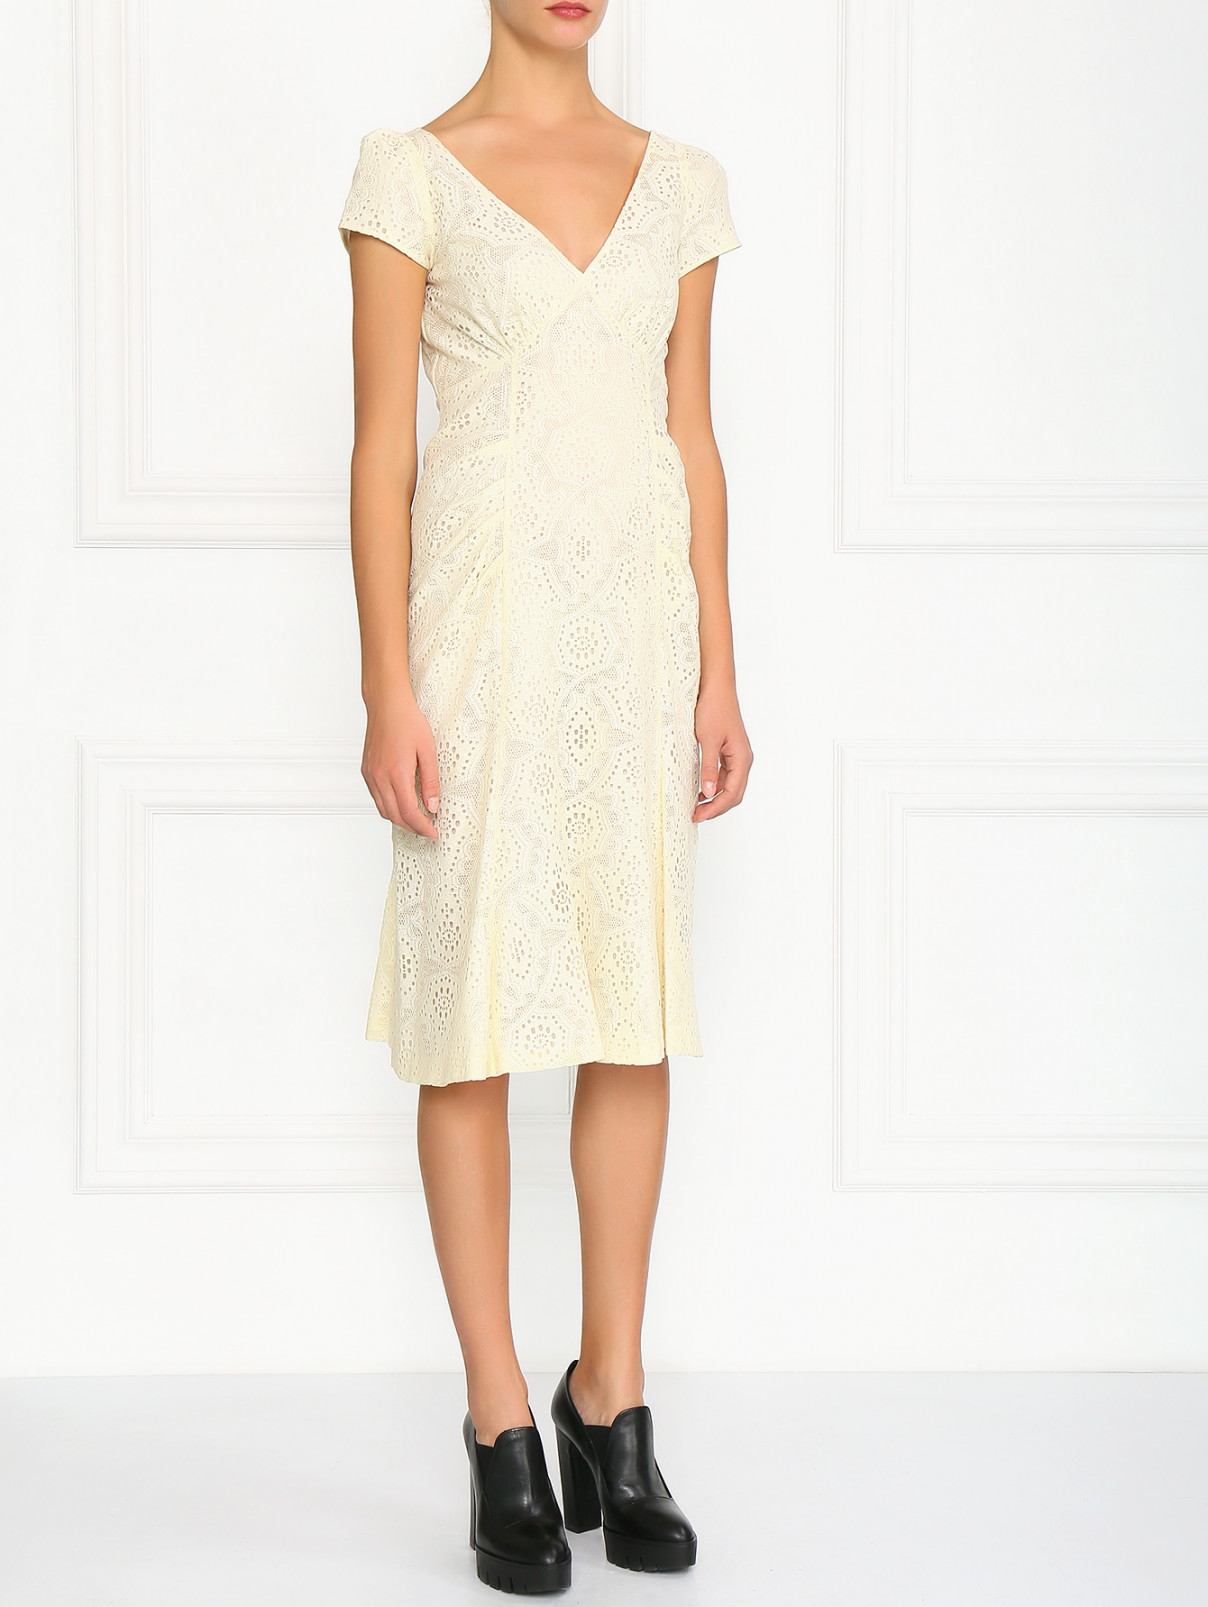 Платье декорированное кружевом Moschino  –  Модель Общий вид  – Цвет:  Белый